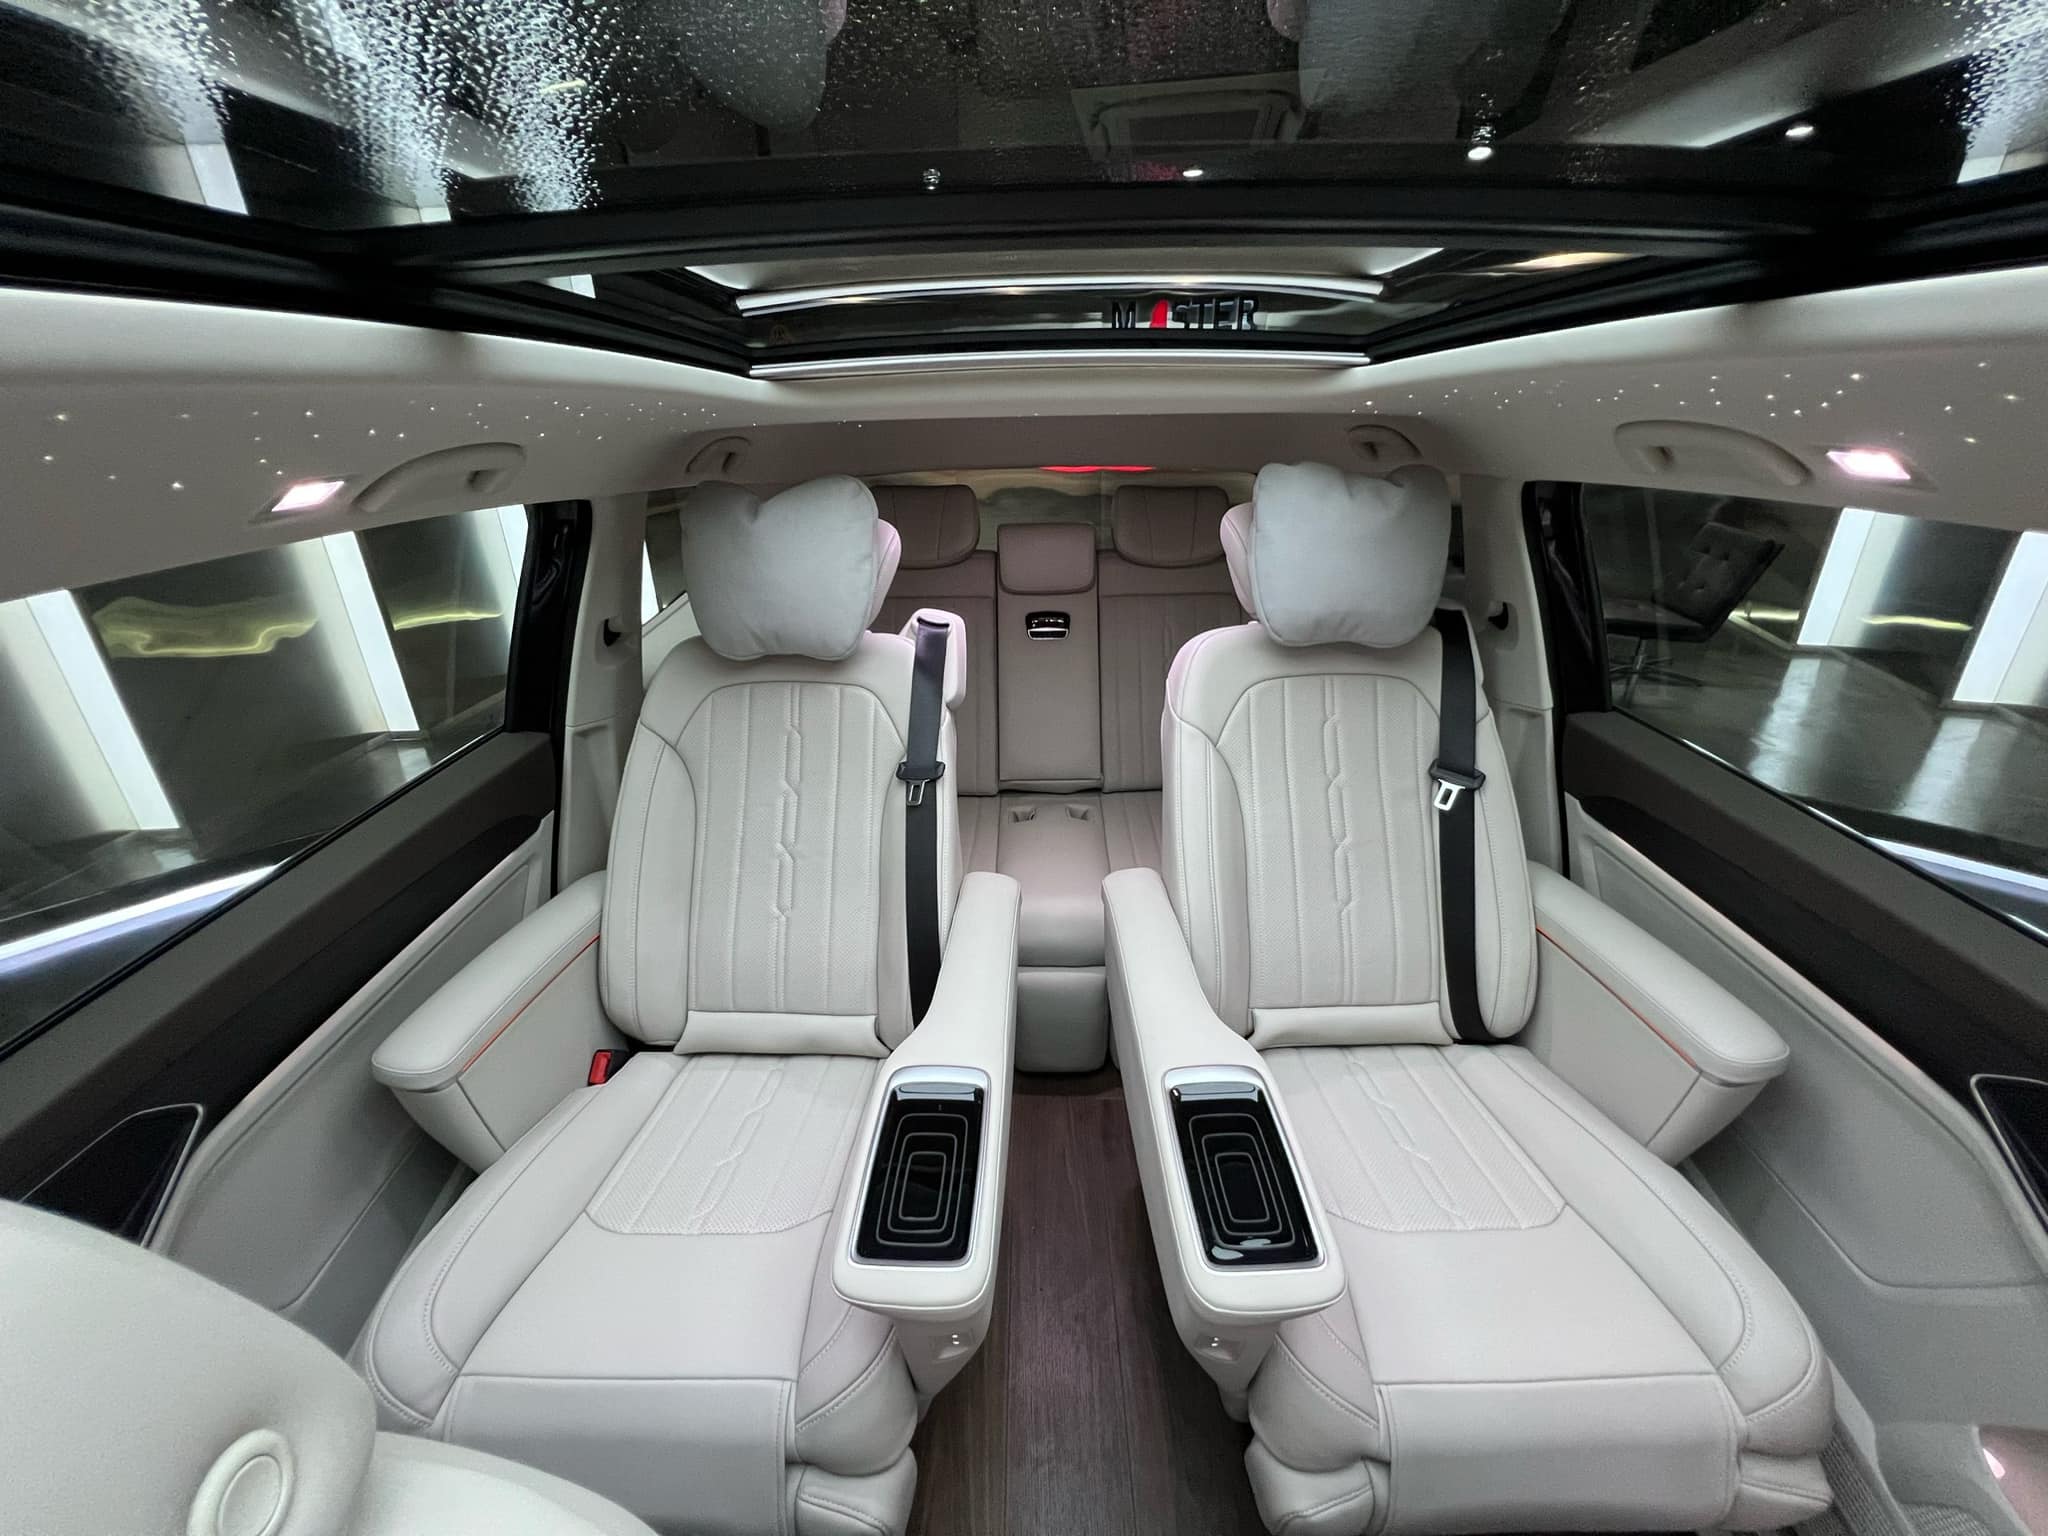 Trấn Thành sắm VW Viloran bản base nhưng có trang bị khủng hơn bản full: Ghế thương gia xoay 360 độ, sàn gỗ, trần sao kiểu Rolls-Royce - ảnh 5